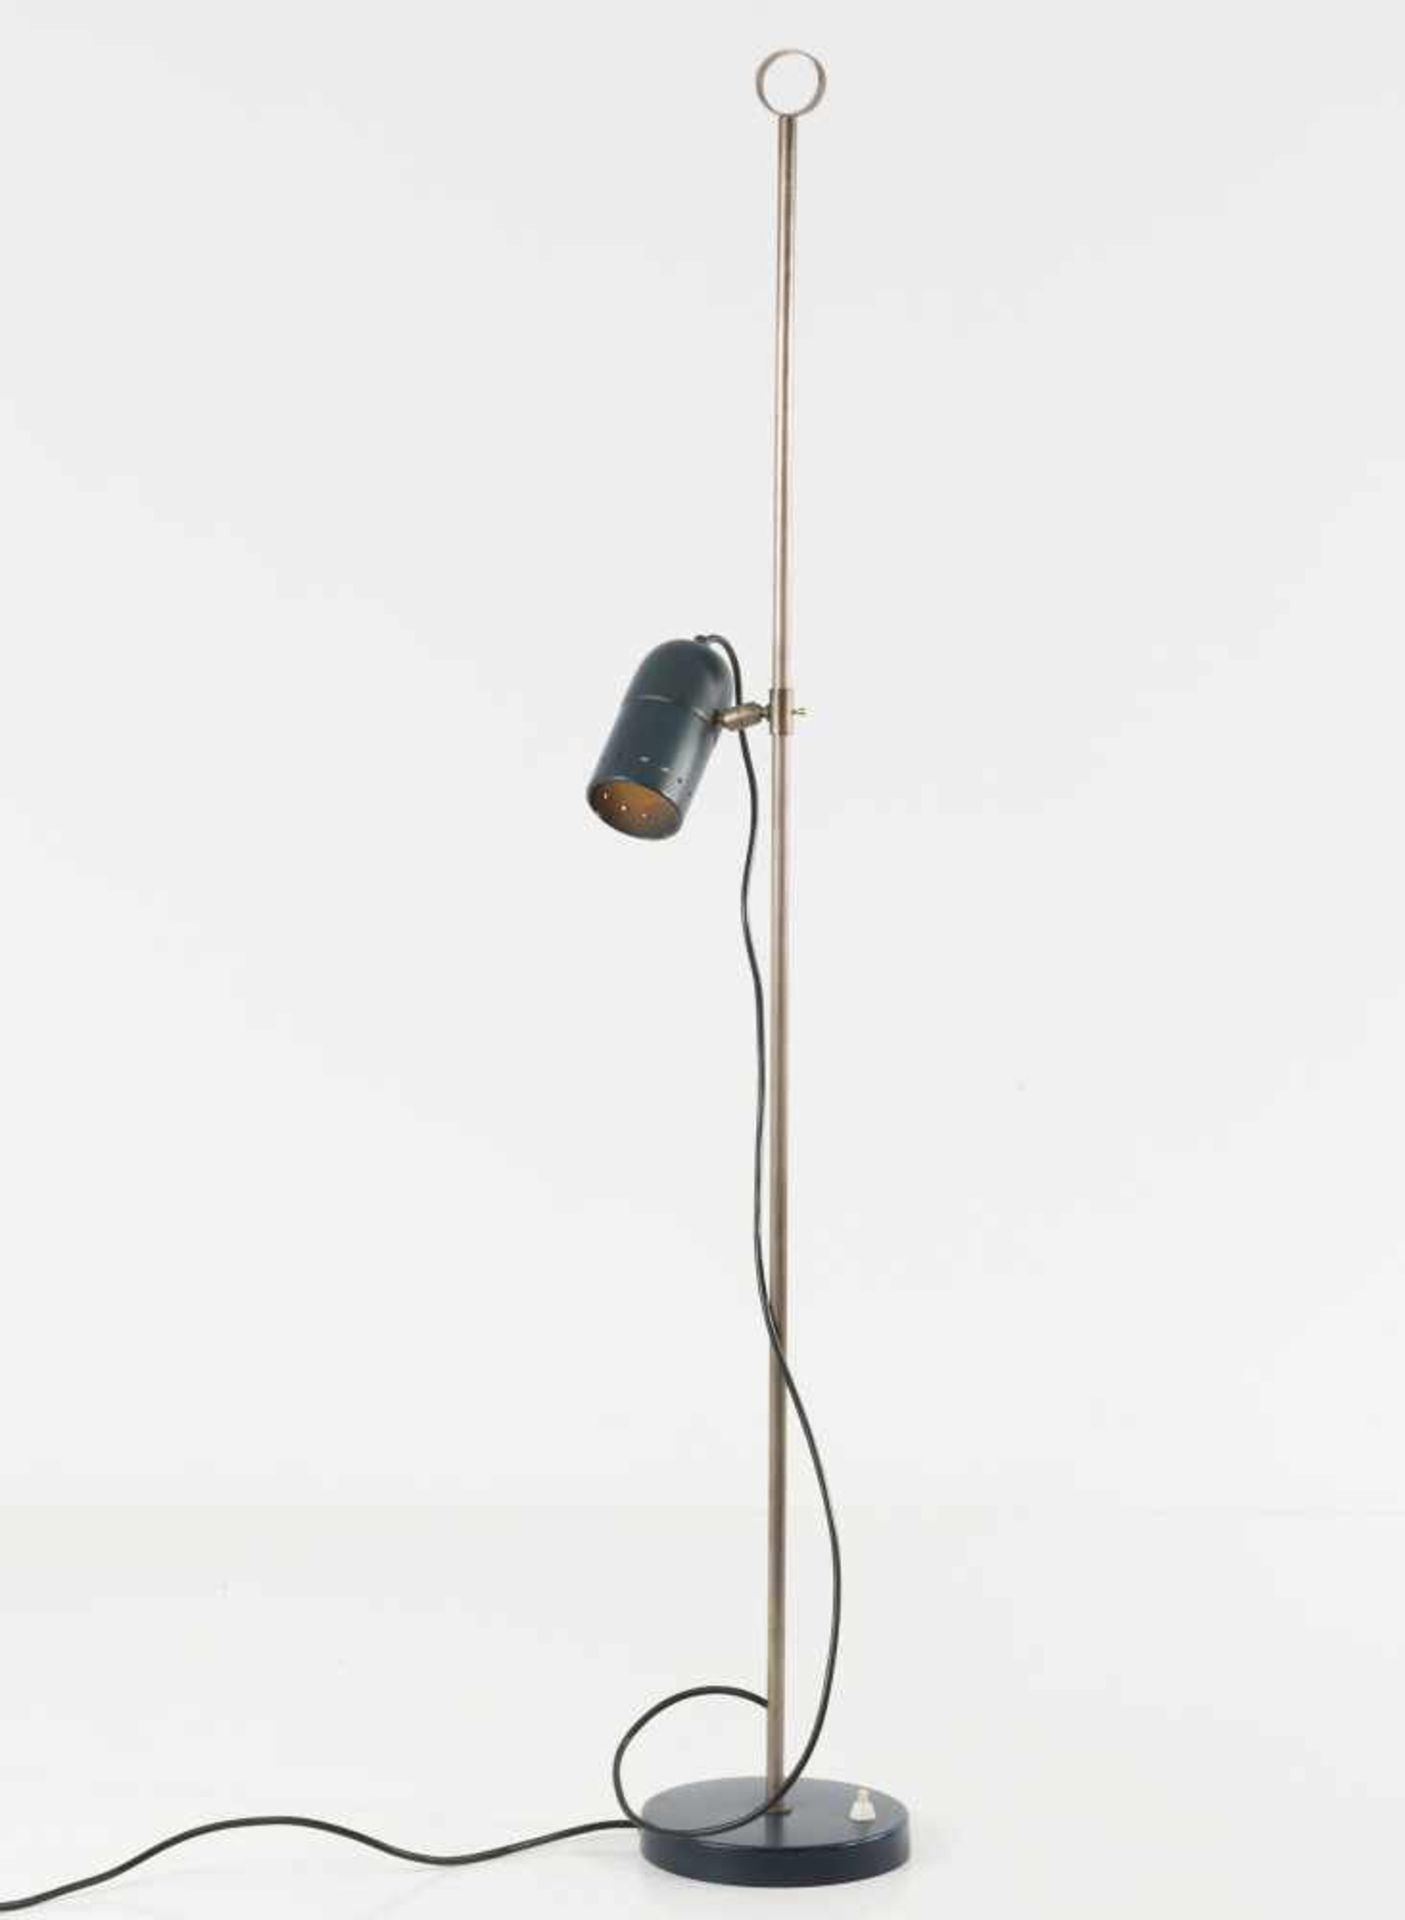 Stehleuchte, 1950er Jahre Oluce, Mailand (zugeschrieben) H. 118 cm, Dm. 6,5 cm. Messingrohr, - Bild 6 aus 6